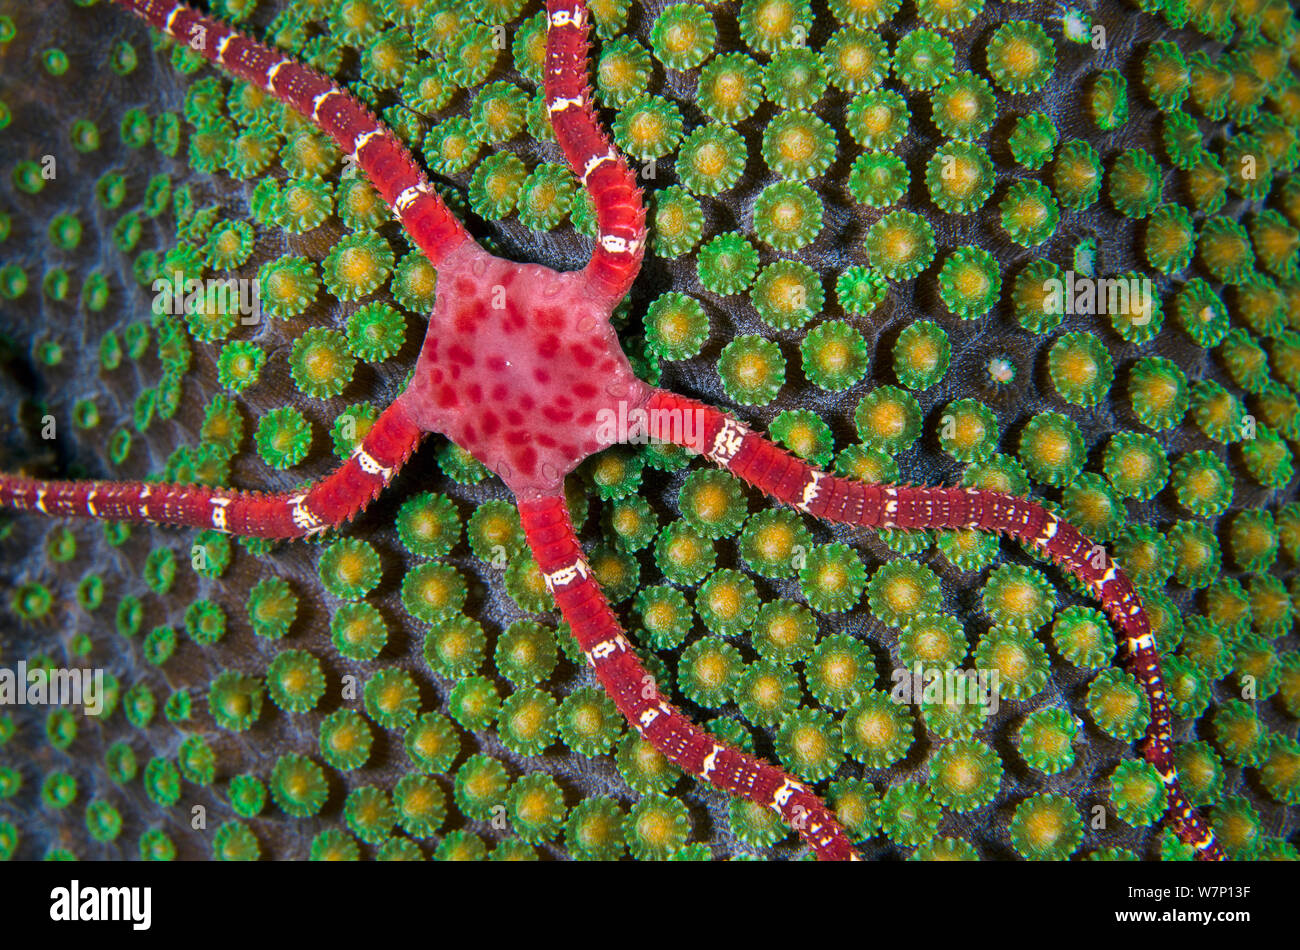 Ruby star fragile (Ophioderma rubicundum) salendo sulla cima di una montagna di corallo a stella (Montastraea faveolata) come si prepara a deporre le uova durante la notte, East End, Grand Cayman, Isole Cayman, British West Indies. Mar dei Caraibi. Foto Stock